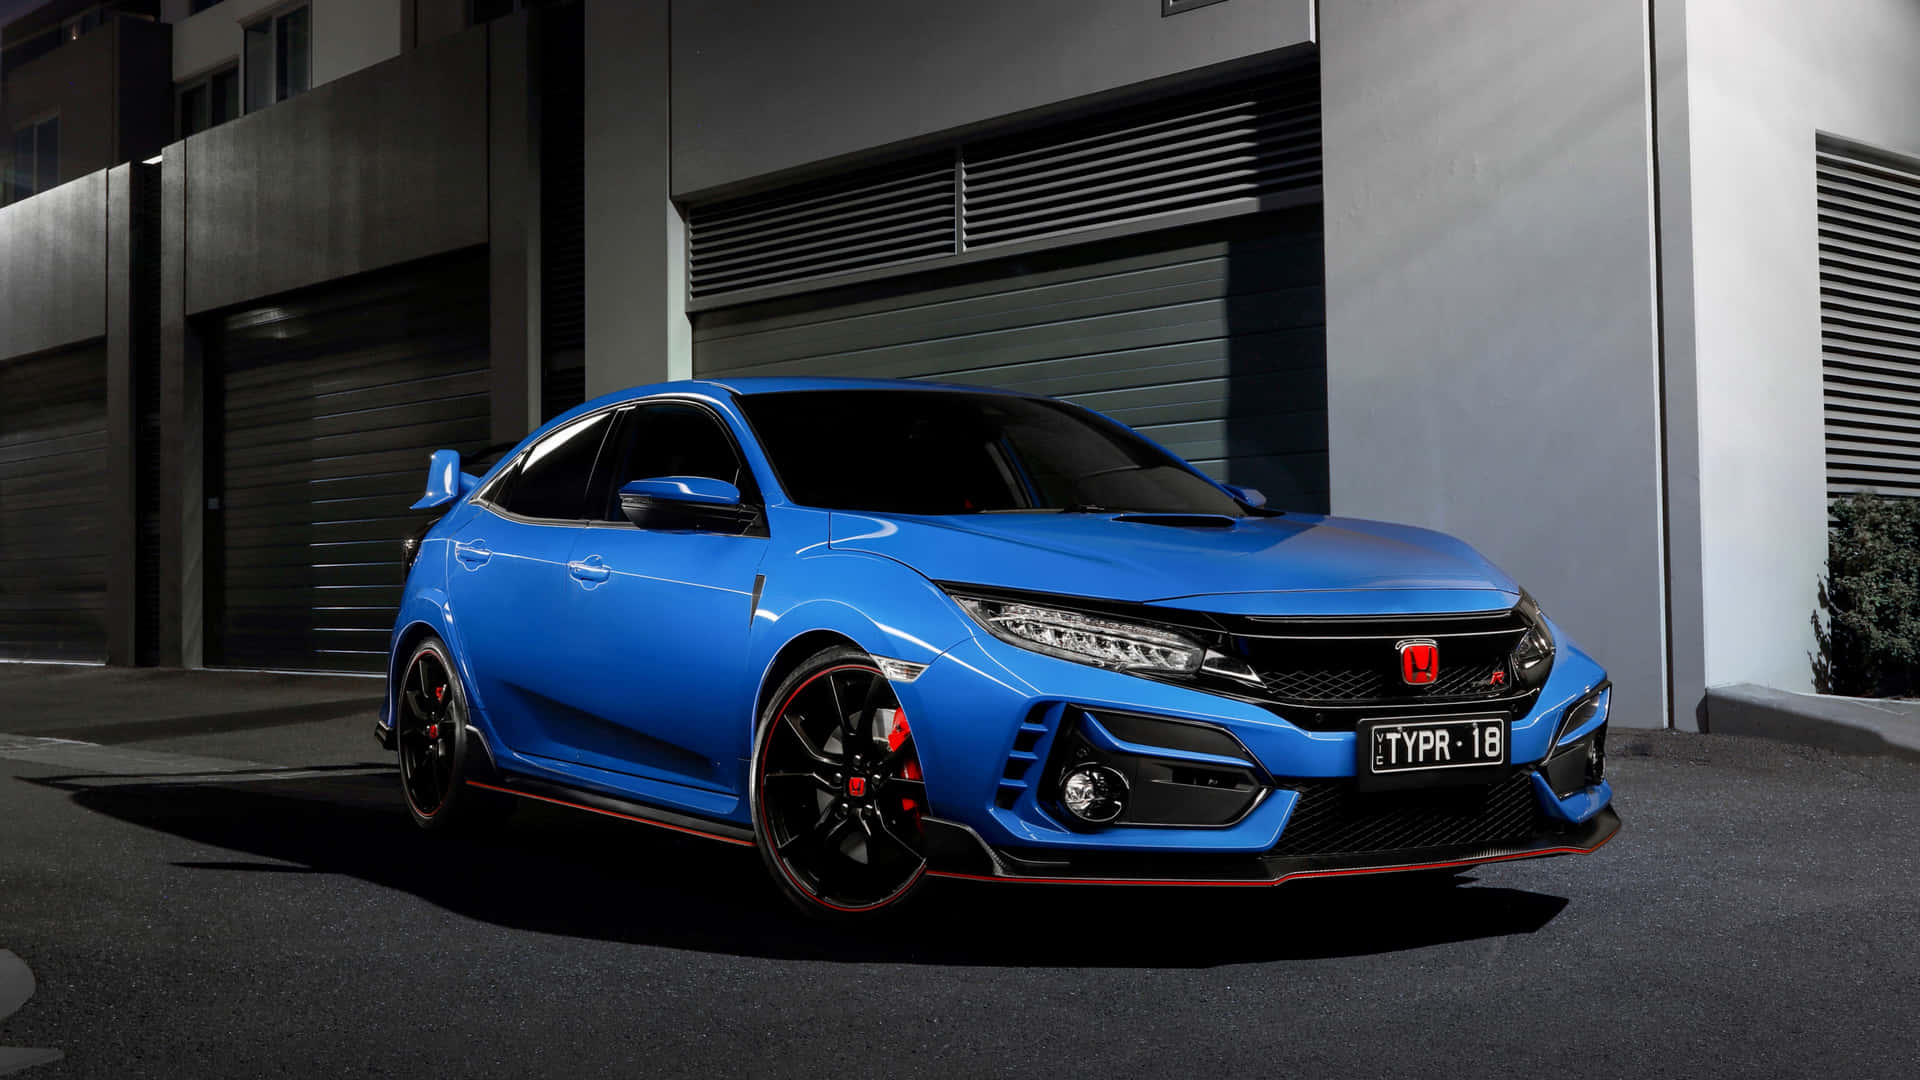 Performance, Luxury&Style - Every Honda Vehicle